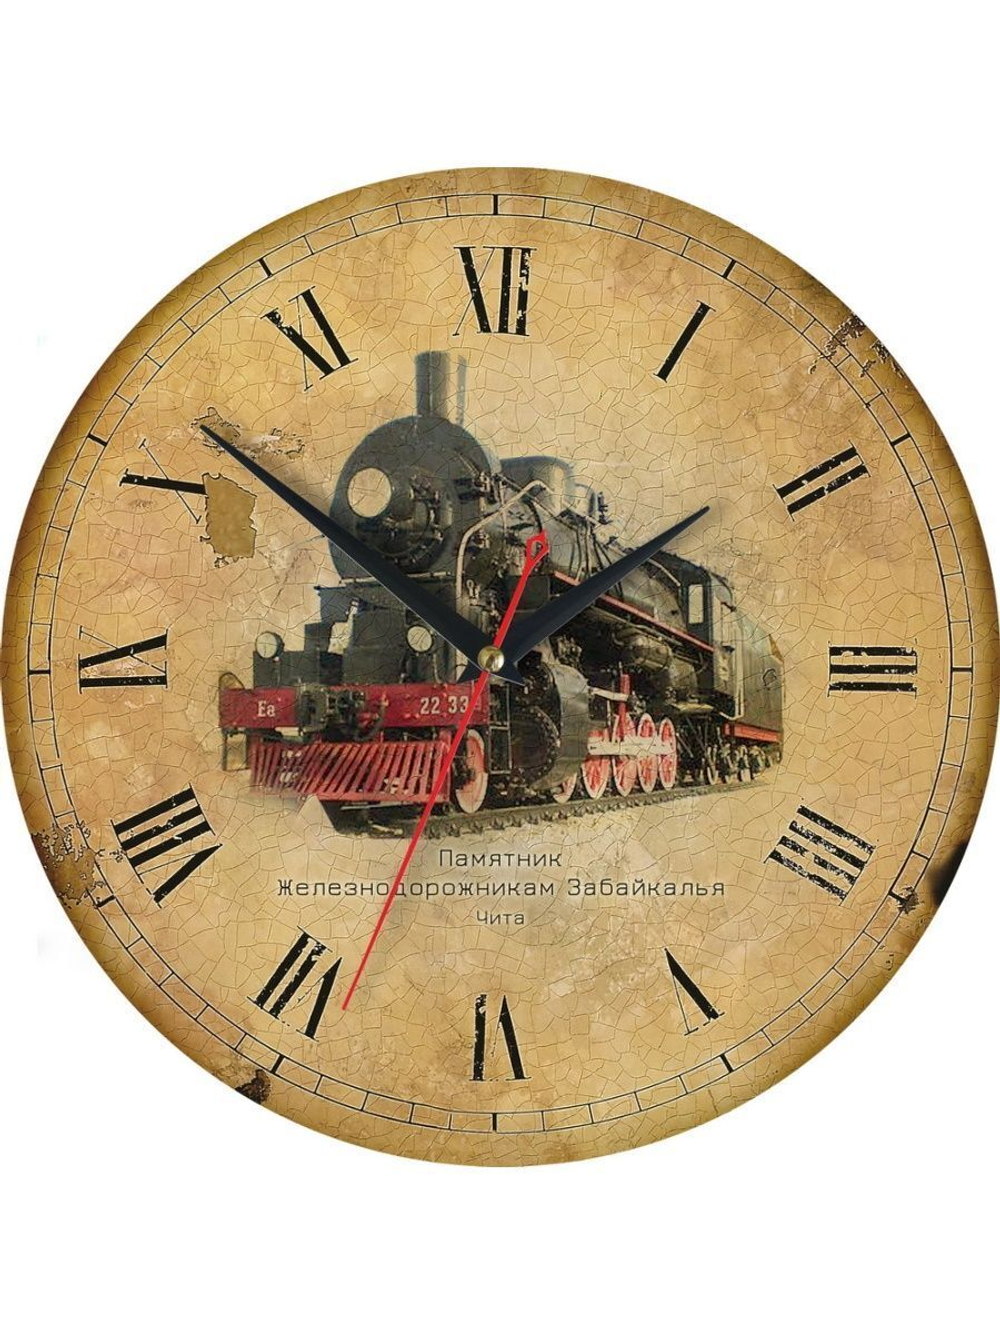 Настенные часы "Памятник любви и верности в Чите"